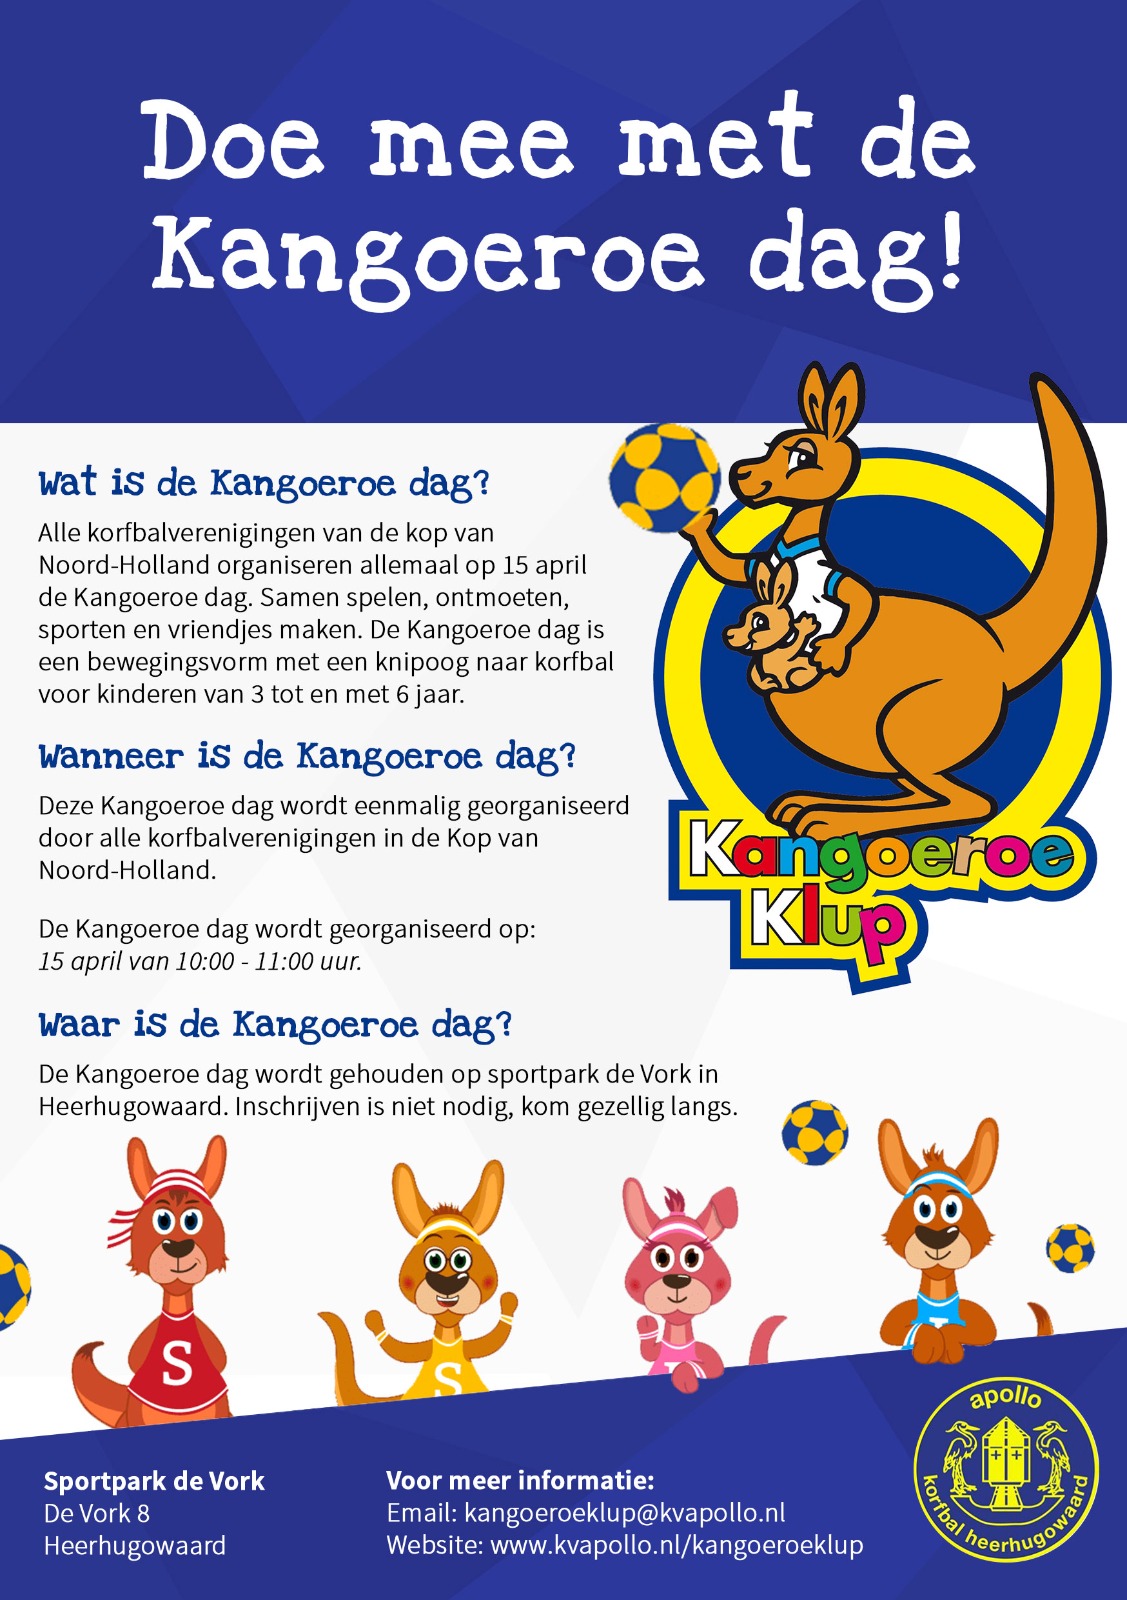 Kangoeroedag voor alle korfbalverenigingen in de kop van Noord-Holland